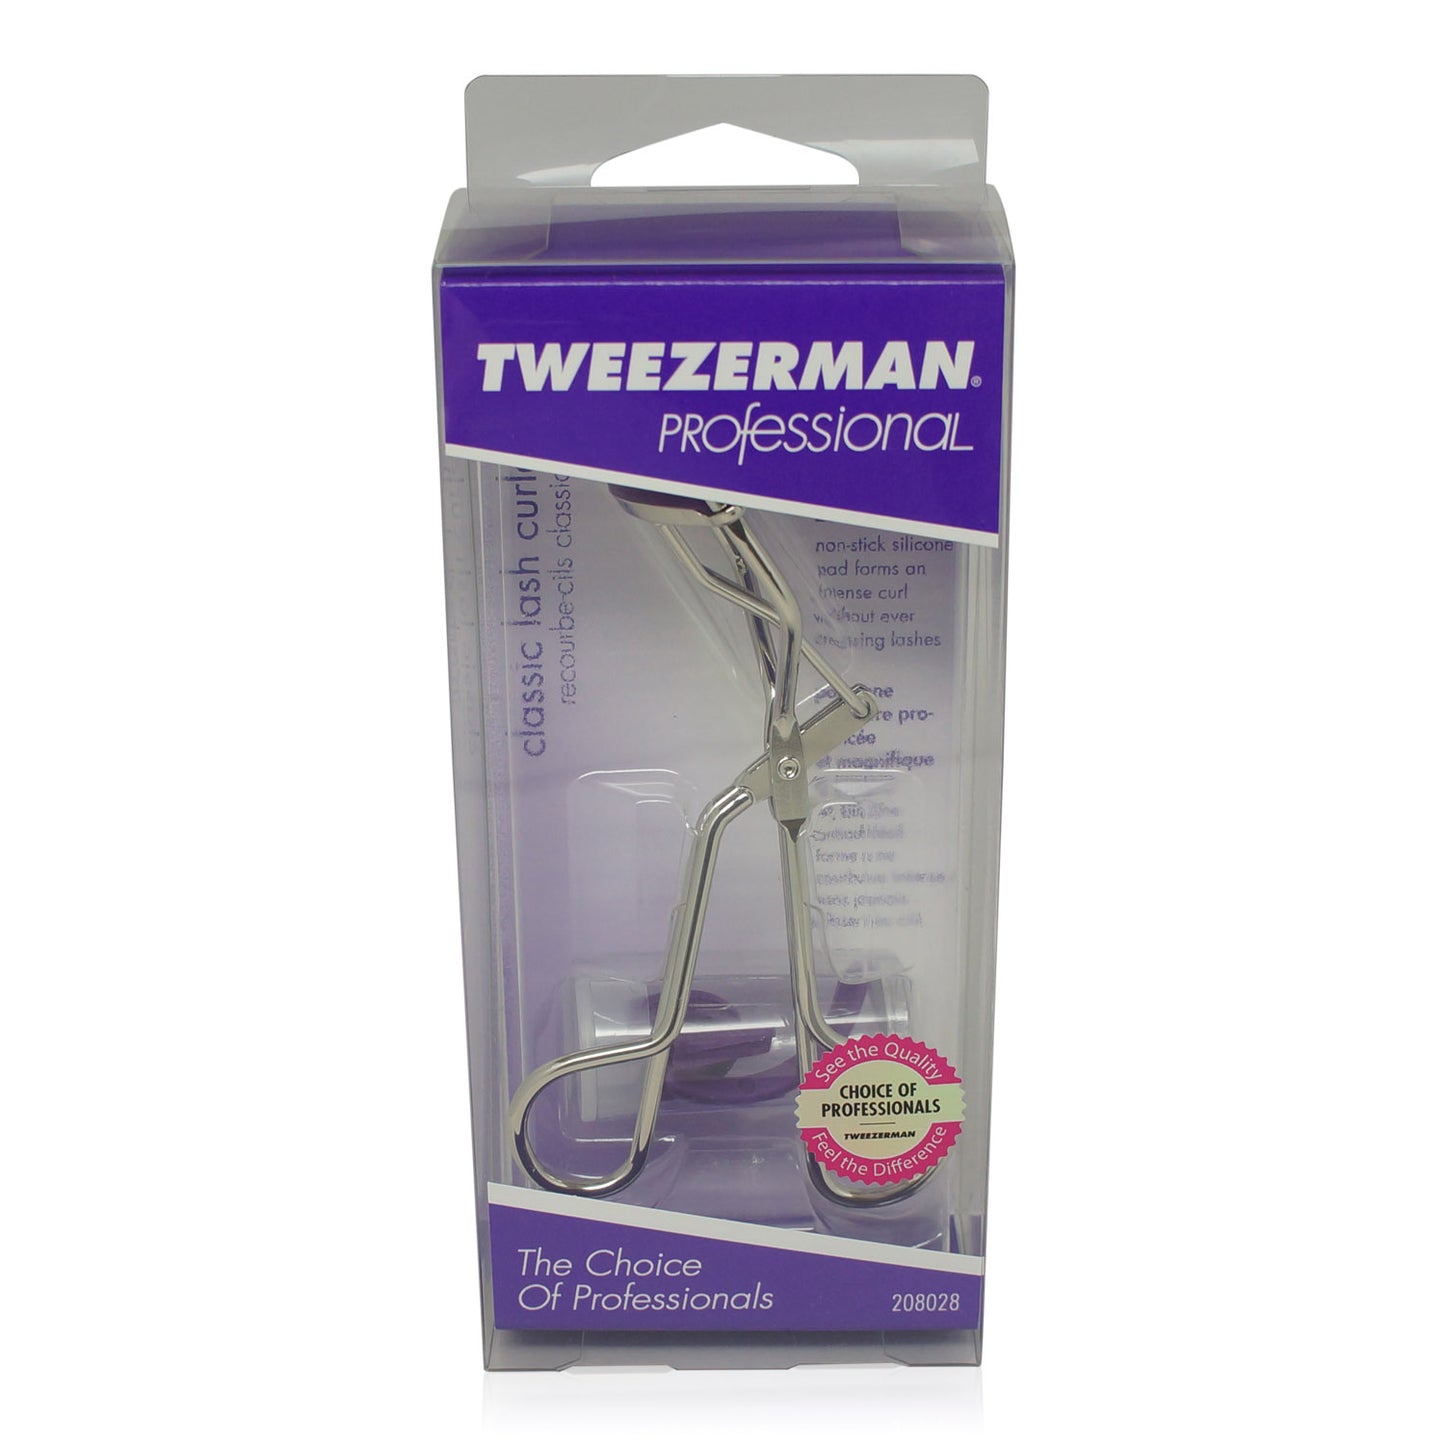 Tweezerman Classic Lash Curler (1034-P) - ADDROS.COM